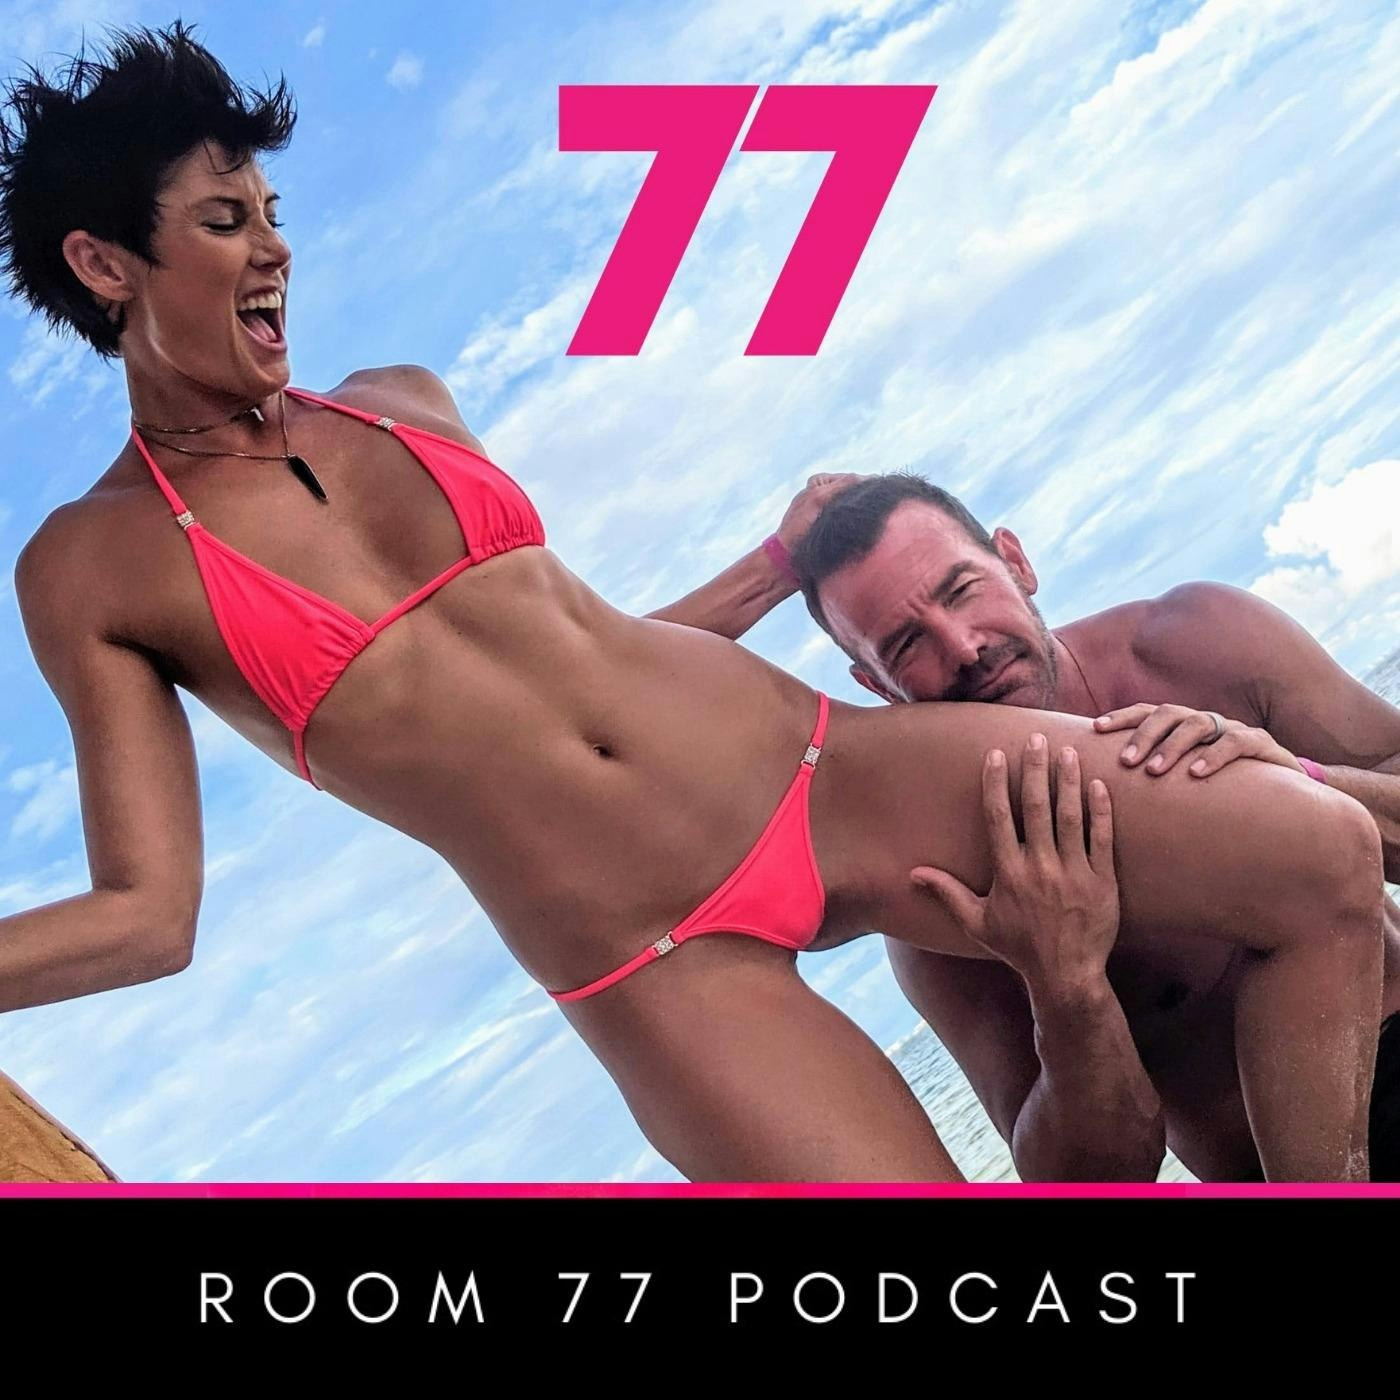 Room 77 Swinger Podcast Lifestyle Podcast For Swingers Listen here Podplay